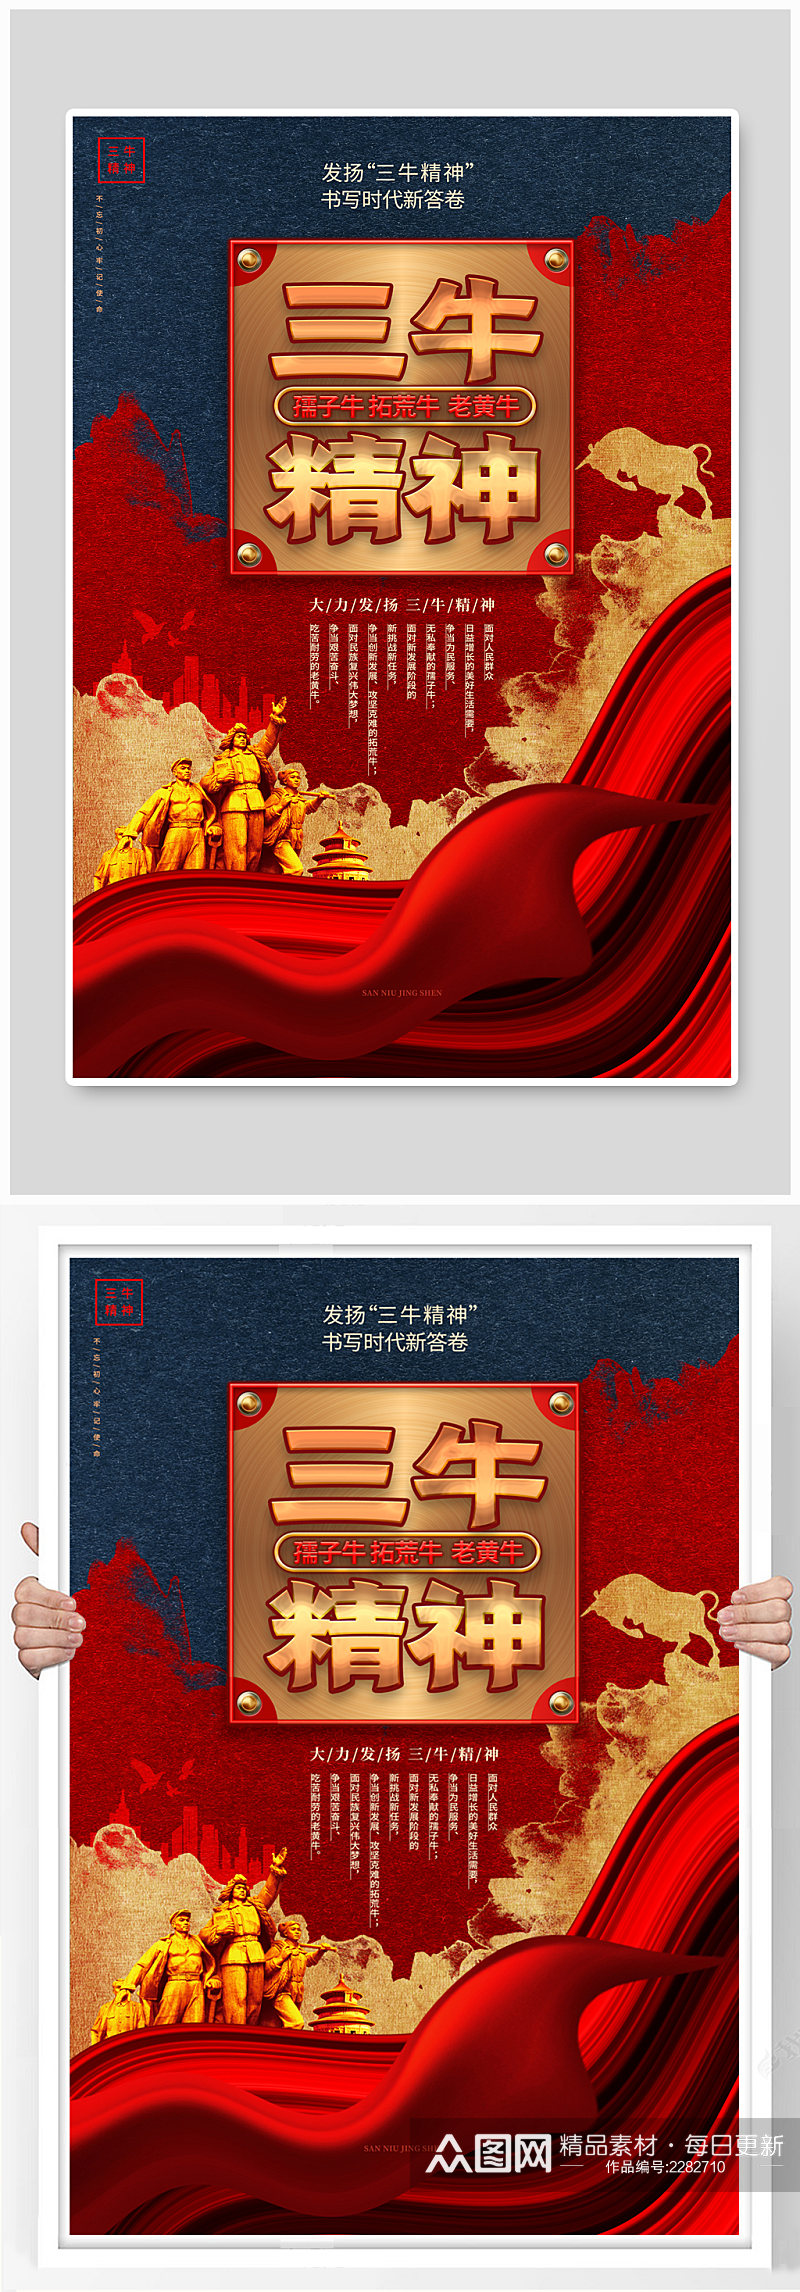 中国风三牛精神党政宣传海报素材